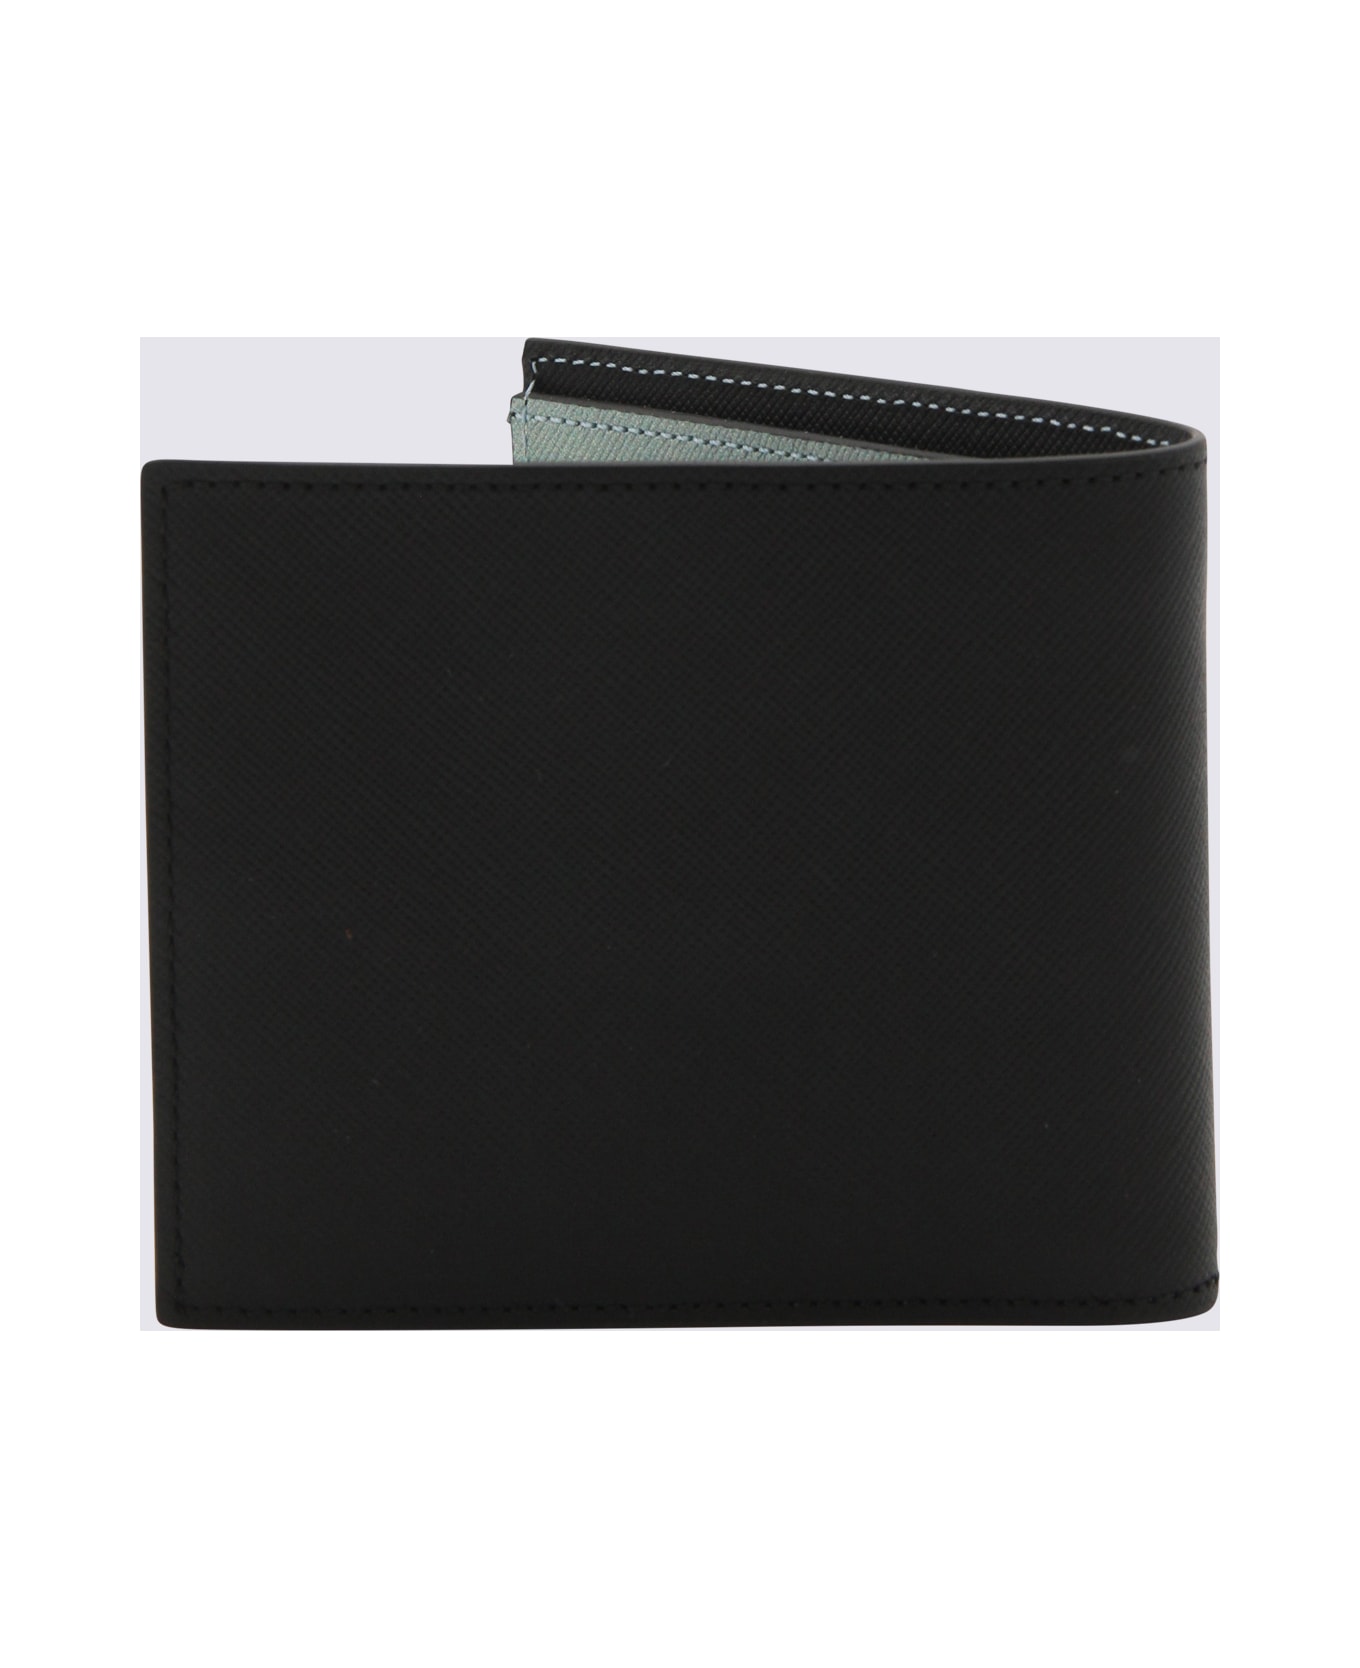 Paul Smith Black Multicolour Leather Wallet - Black 財布